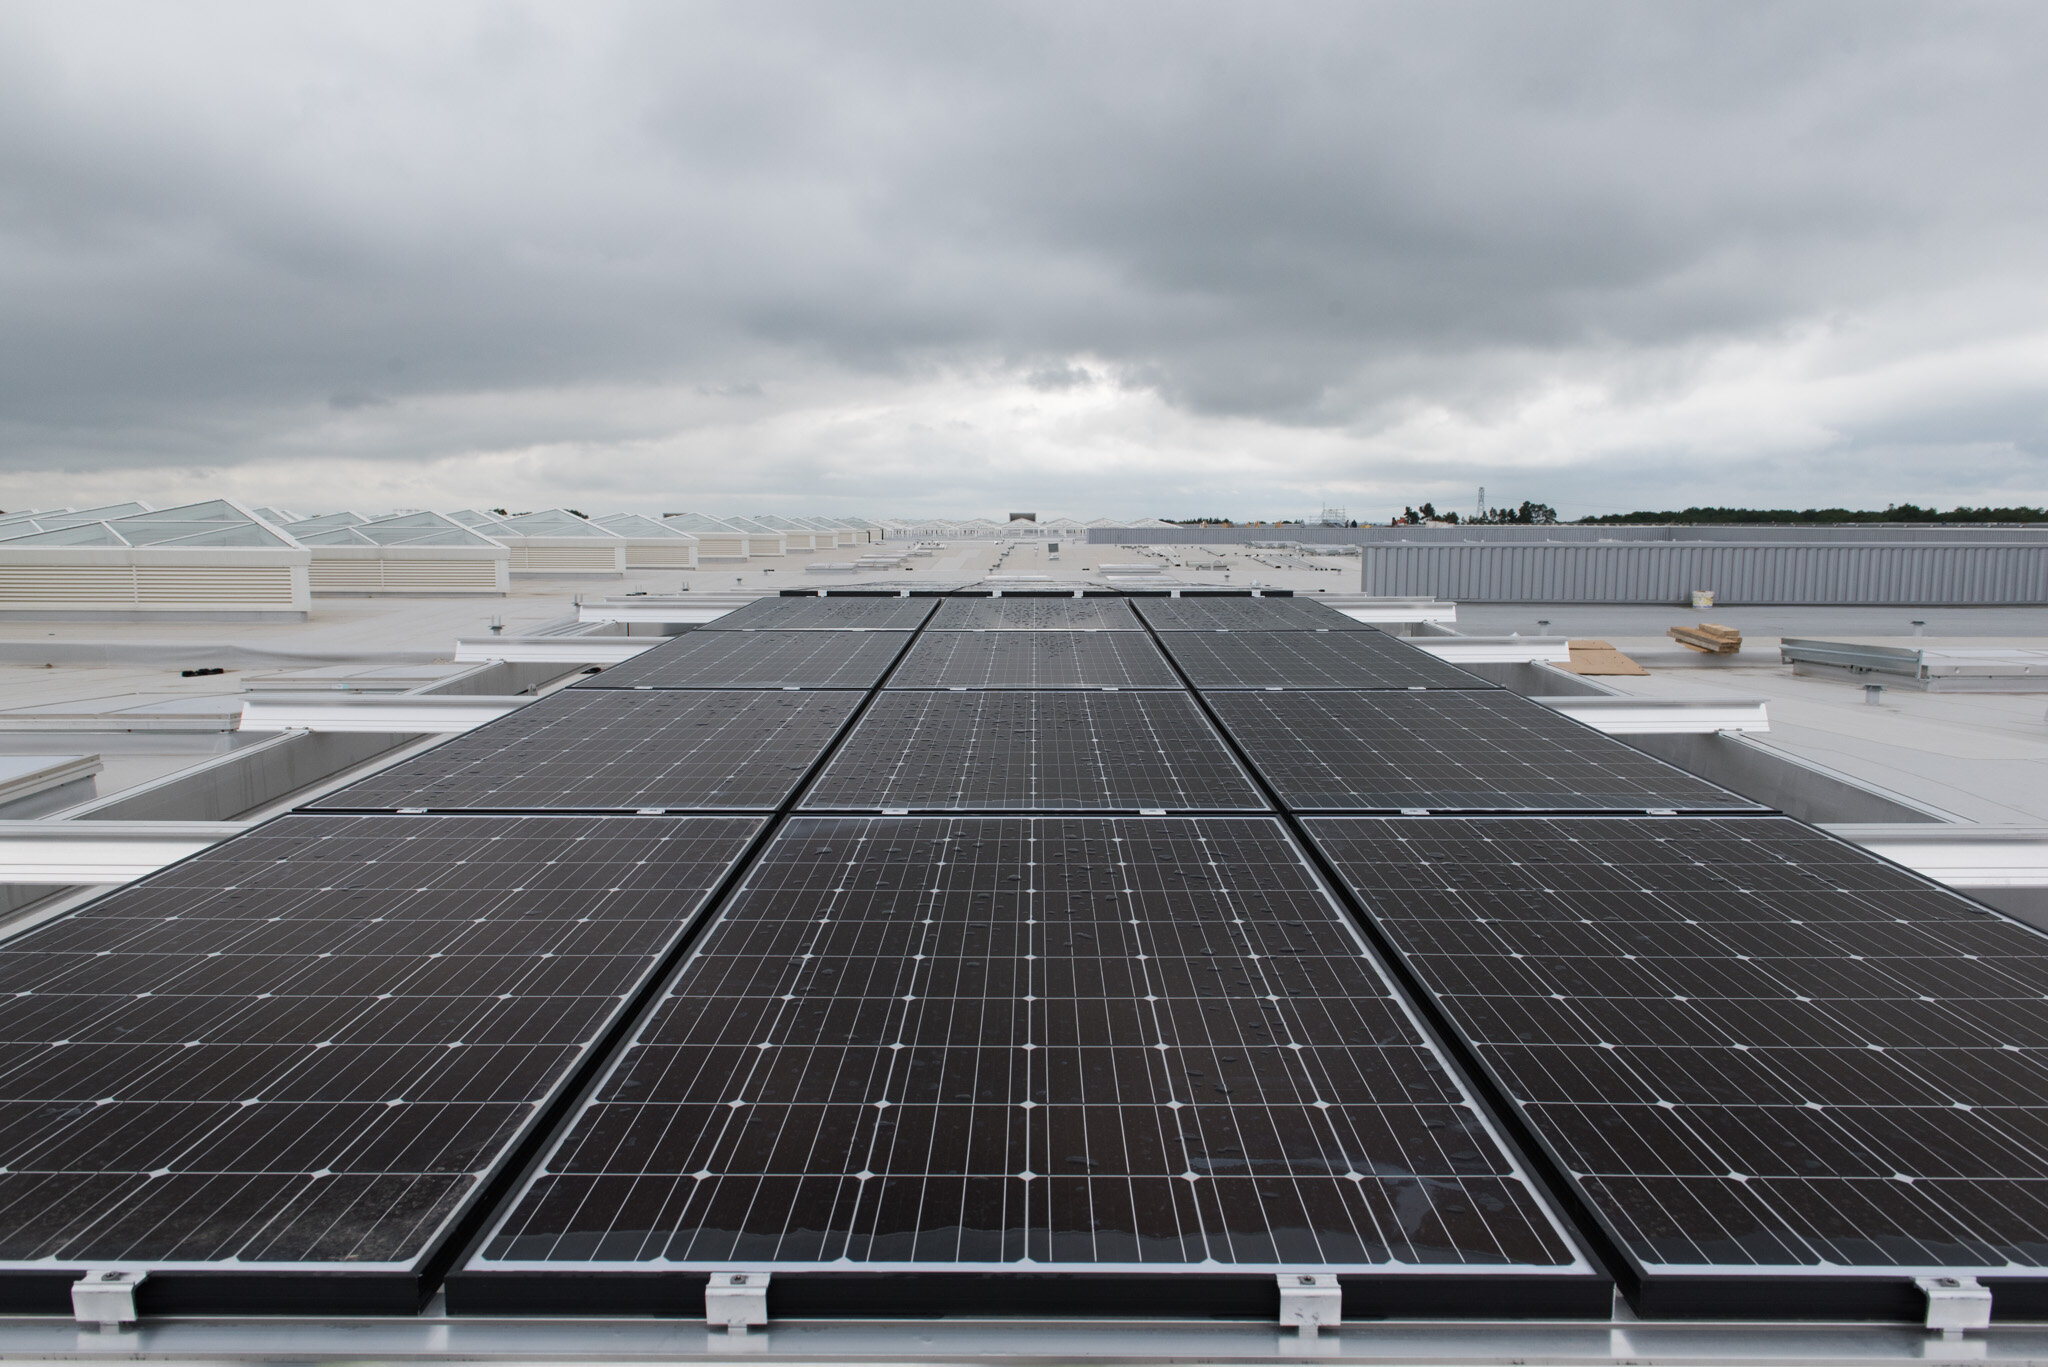    Nouveau/new MIN de Nantes pour Eiffage construction    Solar panels on roof 